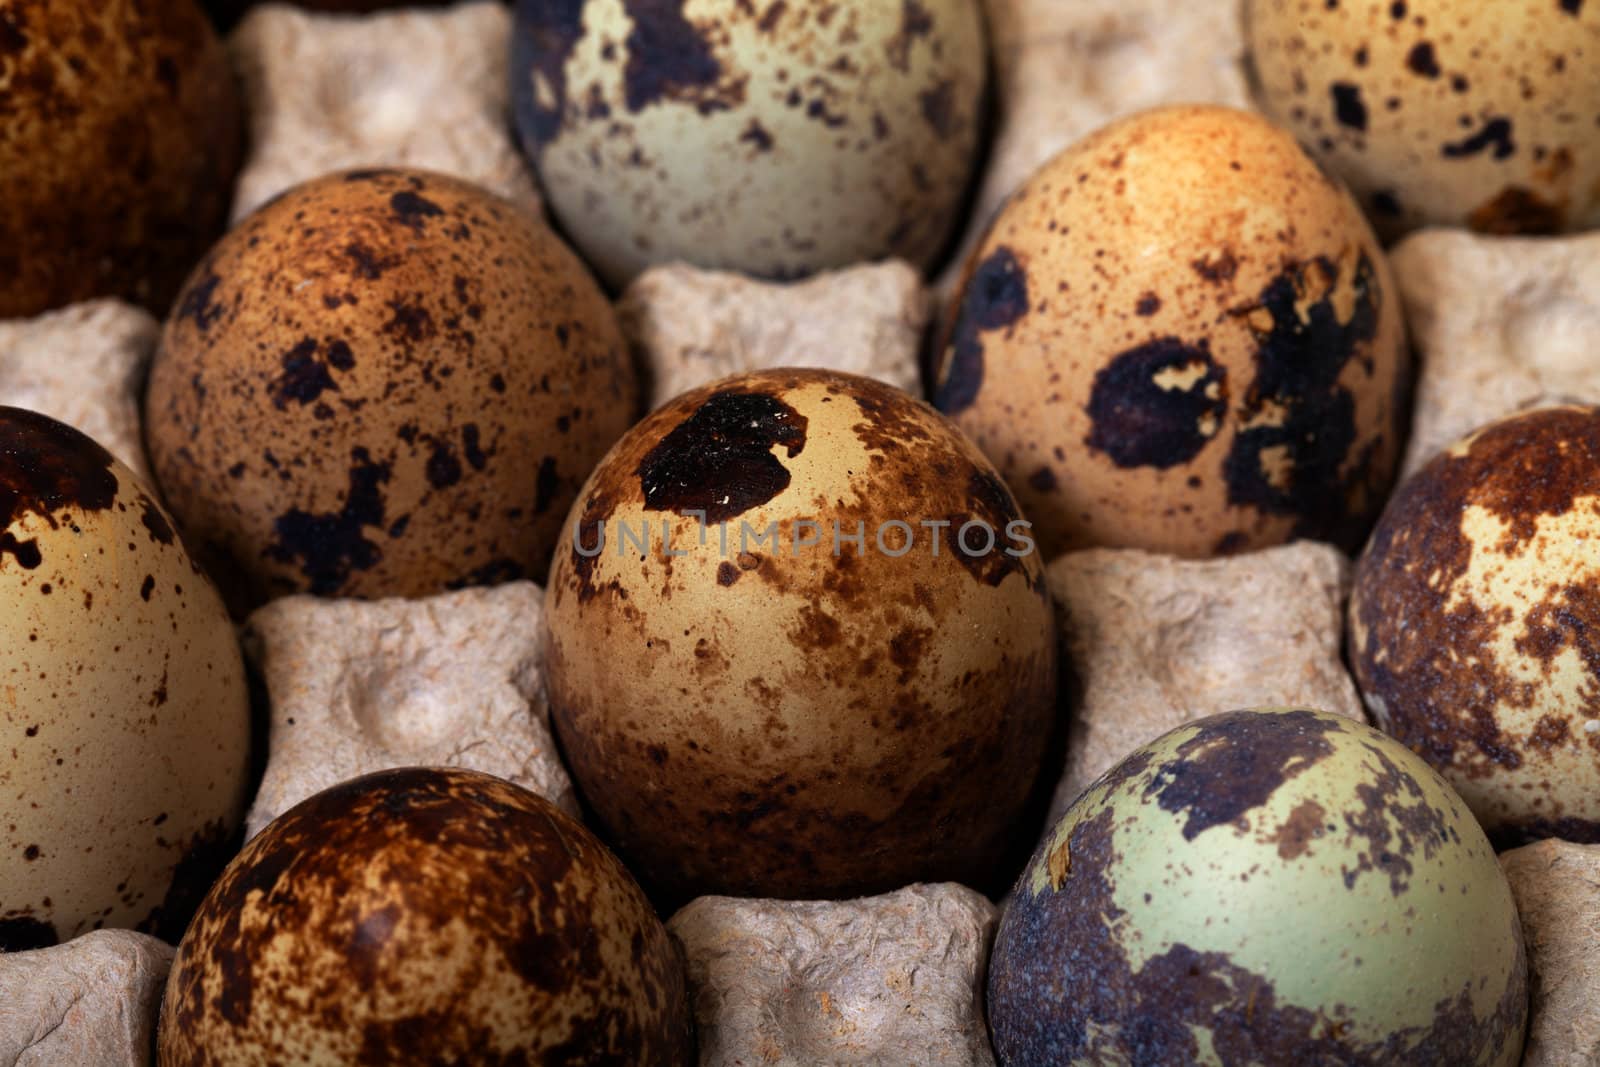 Speckled quail eggs in a carton box closeup